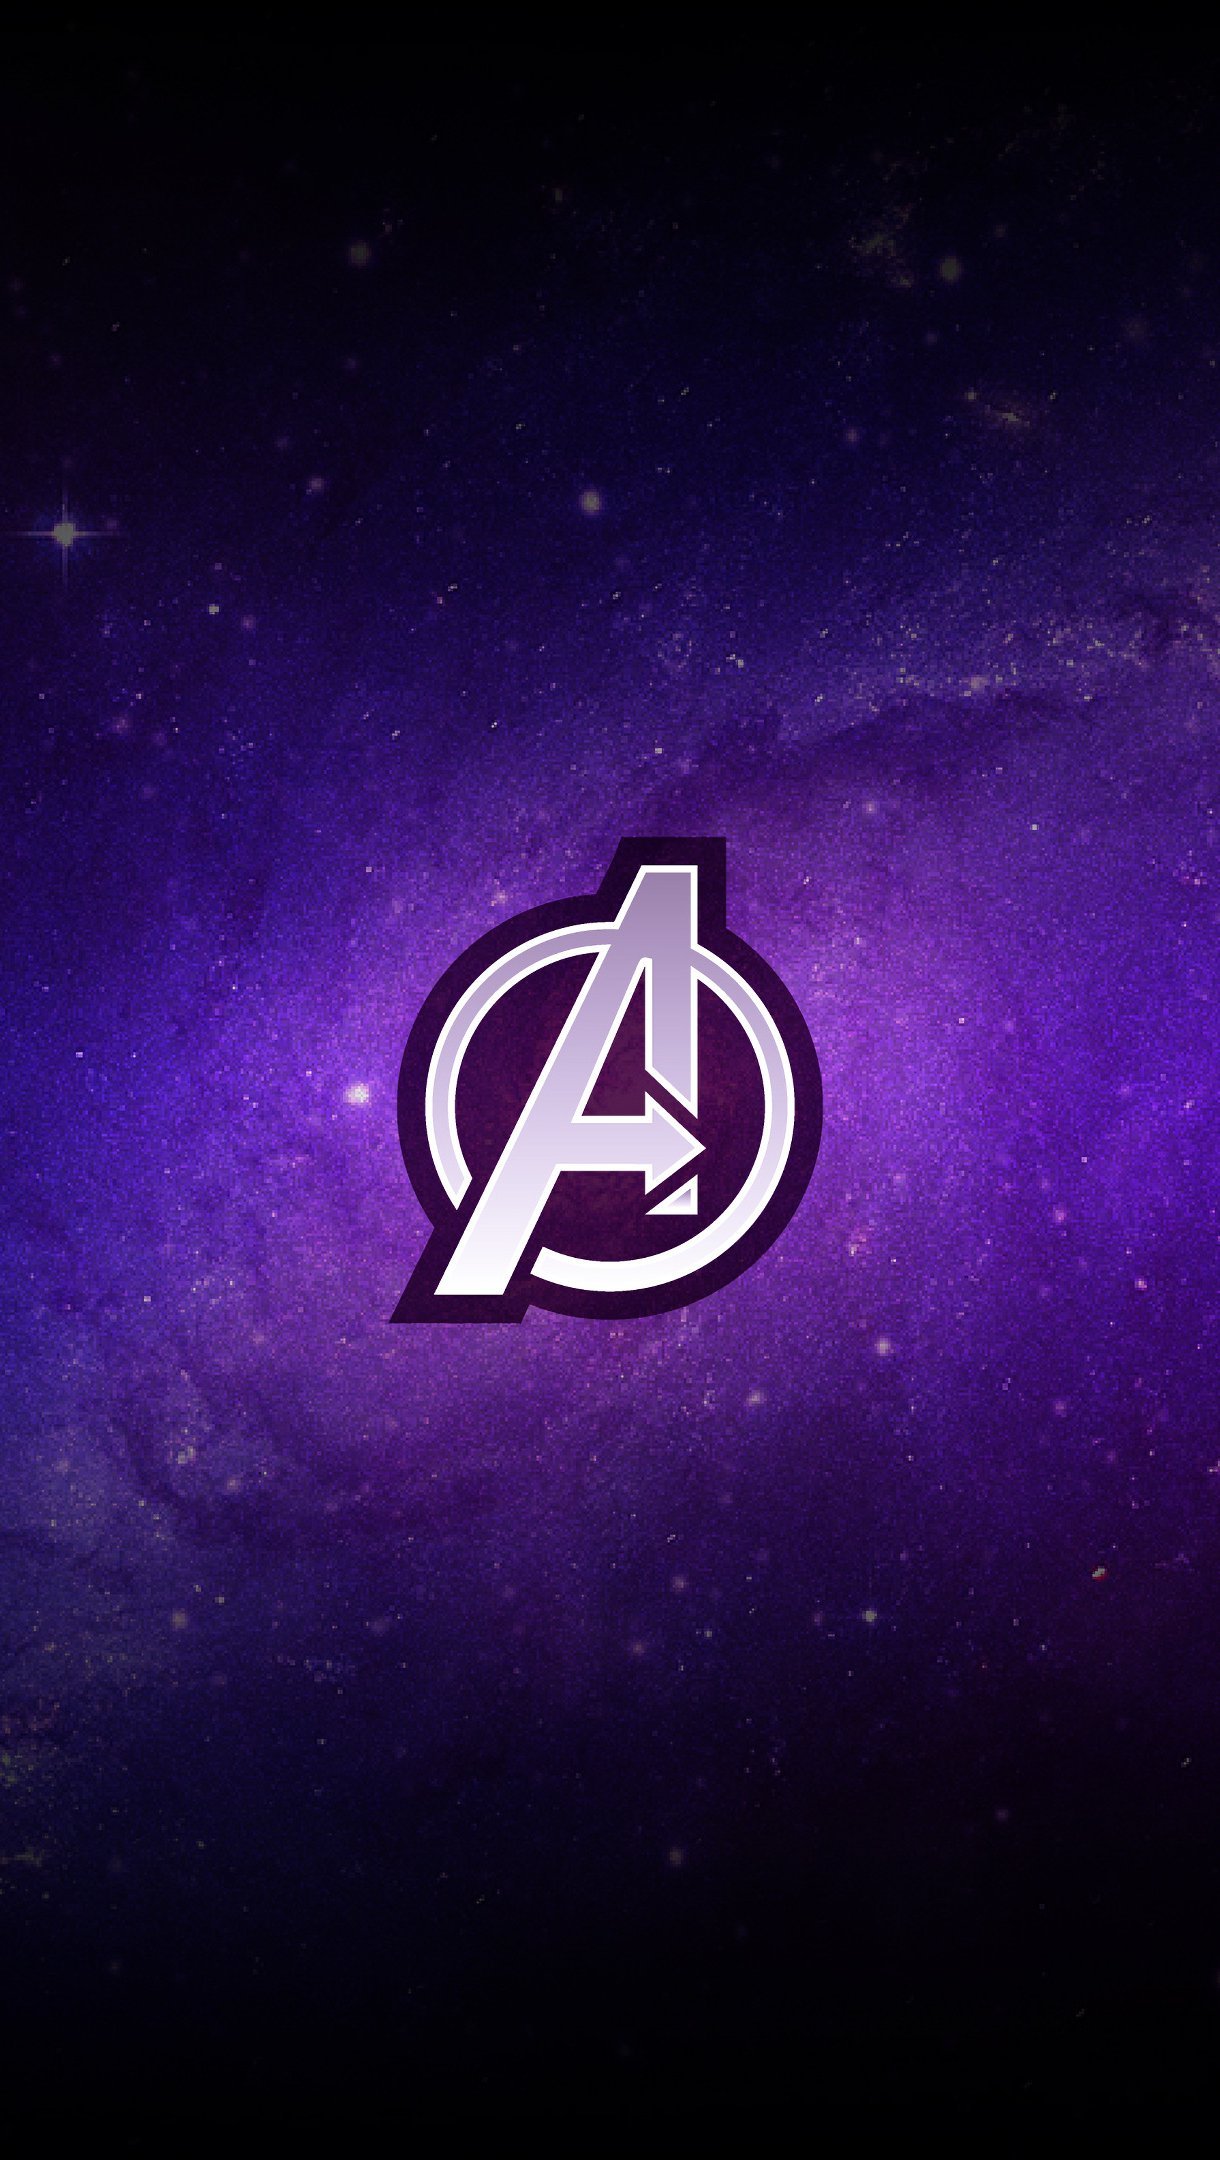 Logo Avengers Endgame Wallpaper 4k Ultra HD ID:3033